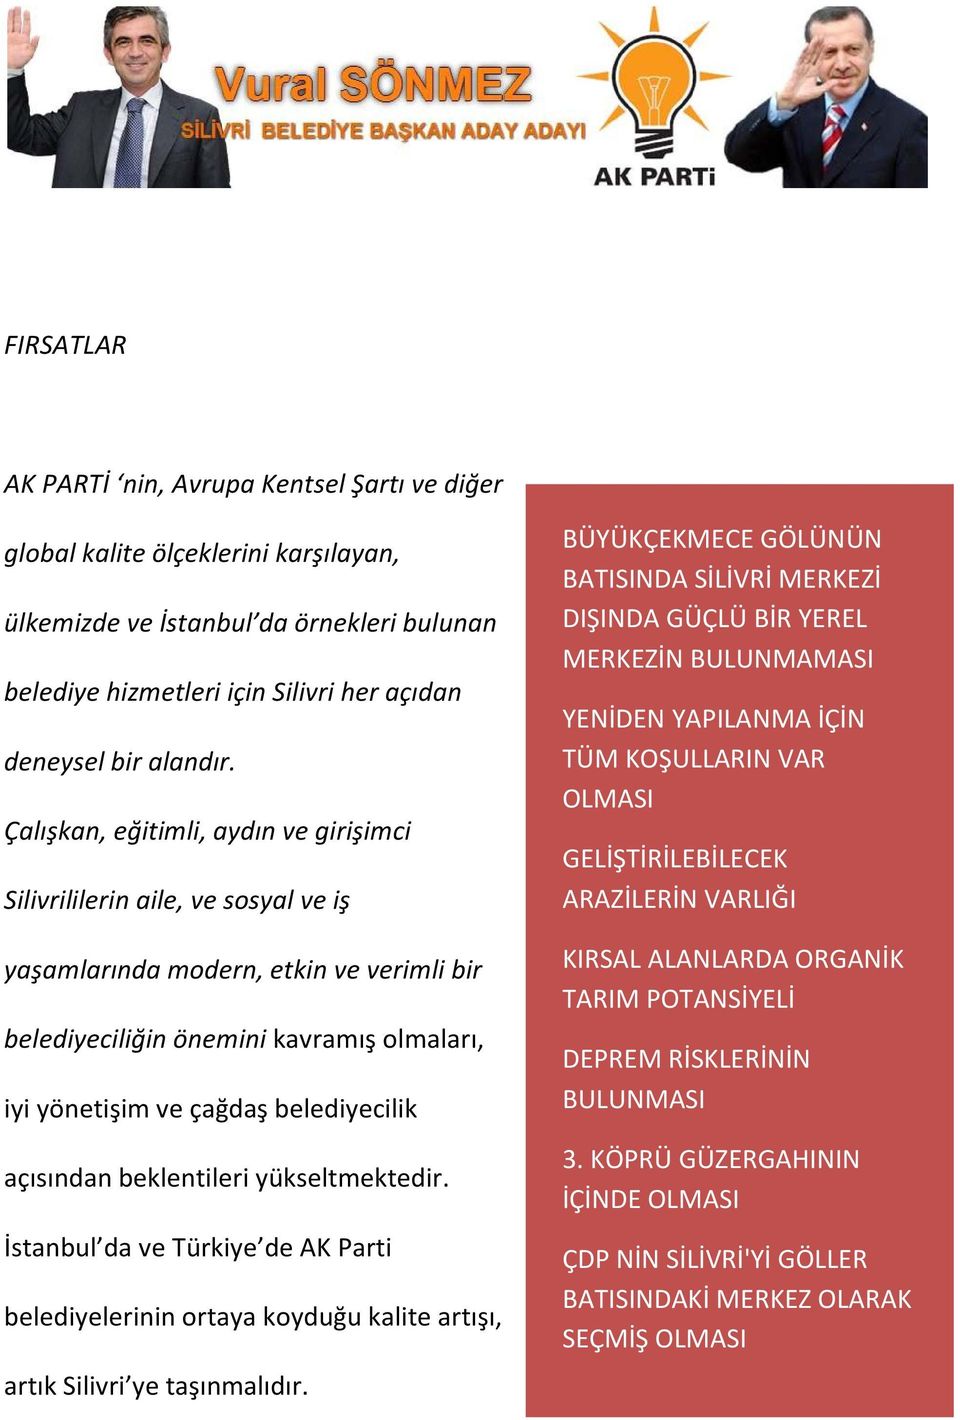 açısından beklentileri yükseltmektedir. İstanbul da ve Türkiye de AK Parti belediyelerinin ortaya koyduğu kalite artışı, artık Silivri ye taşınmalıdır.